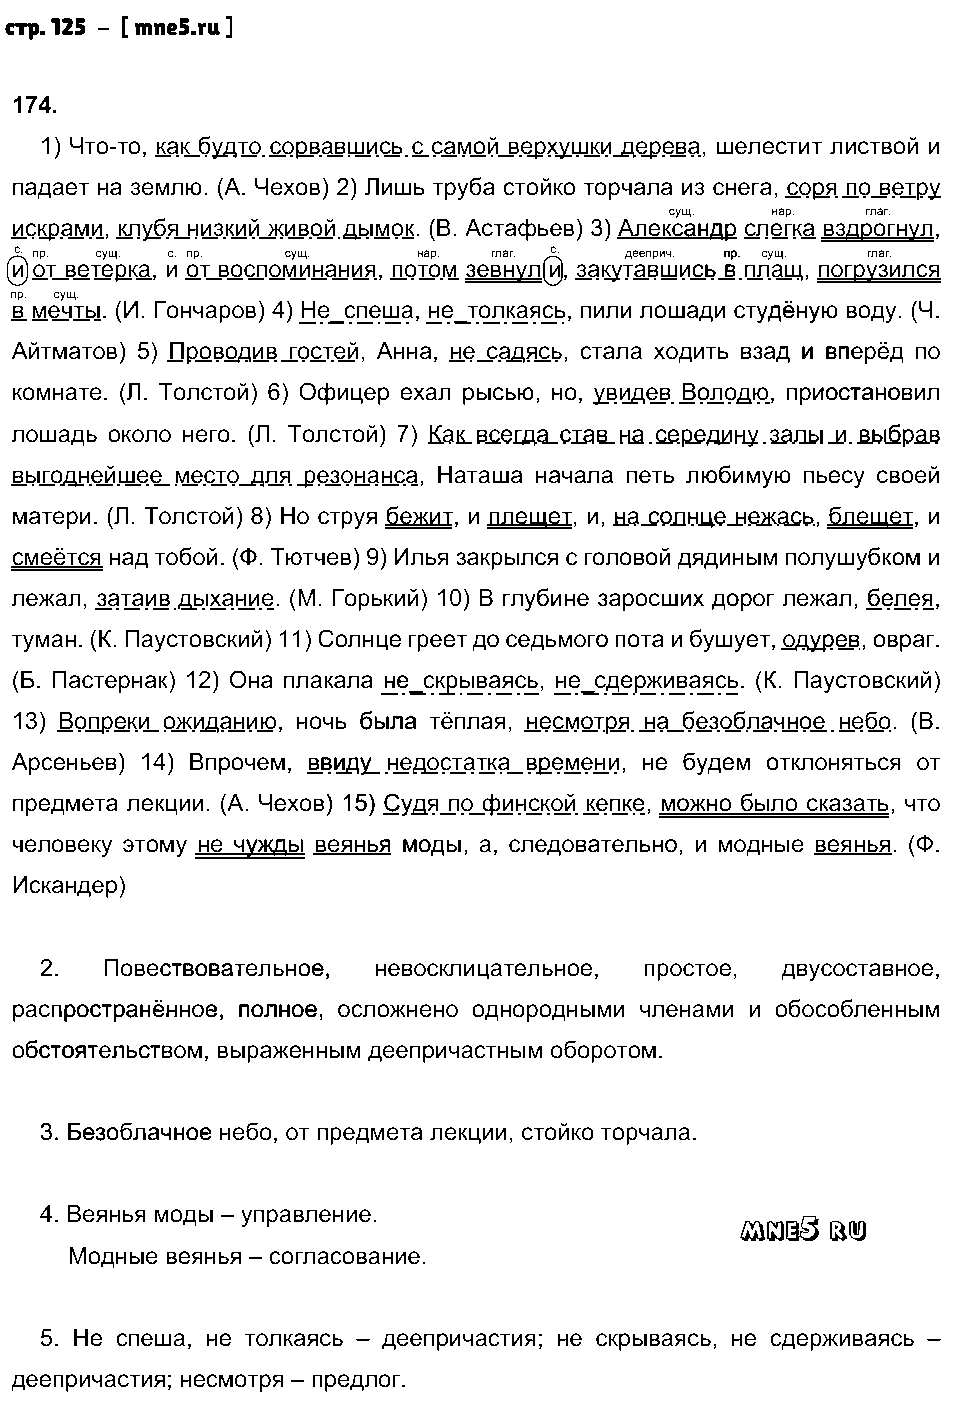 ГДЗ Русский язык 8 класс - стр. 125